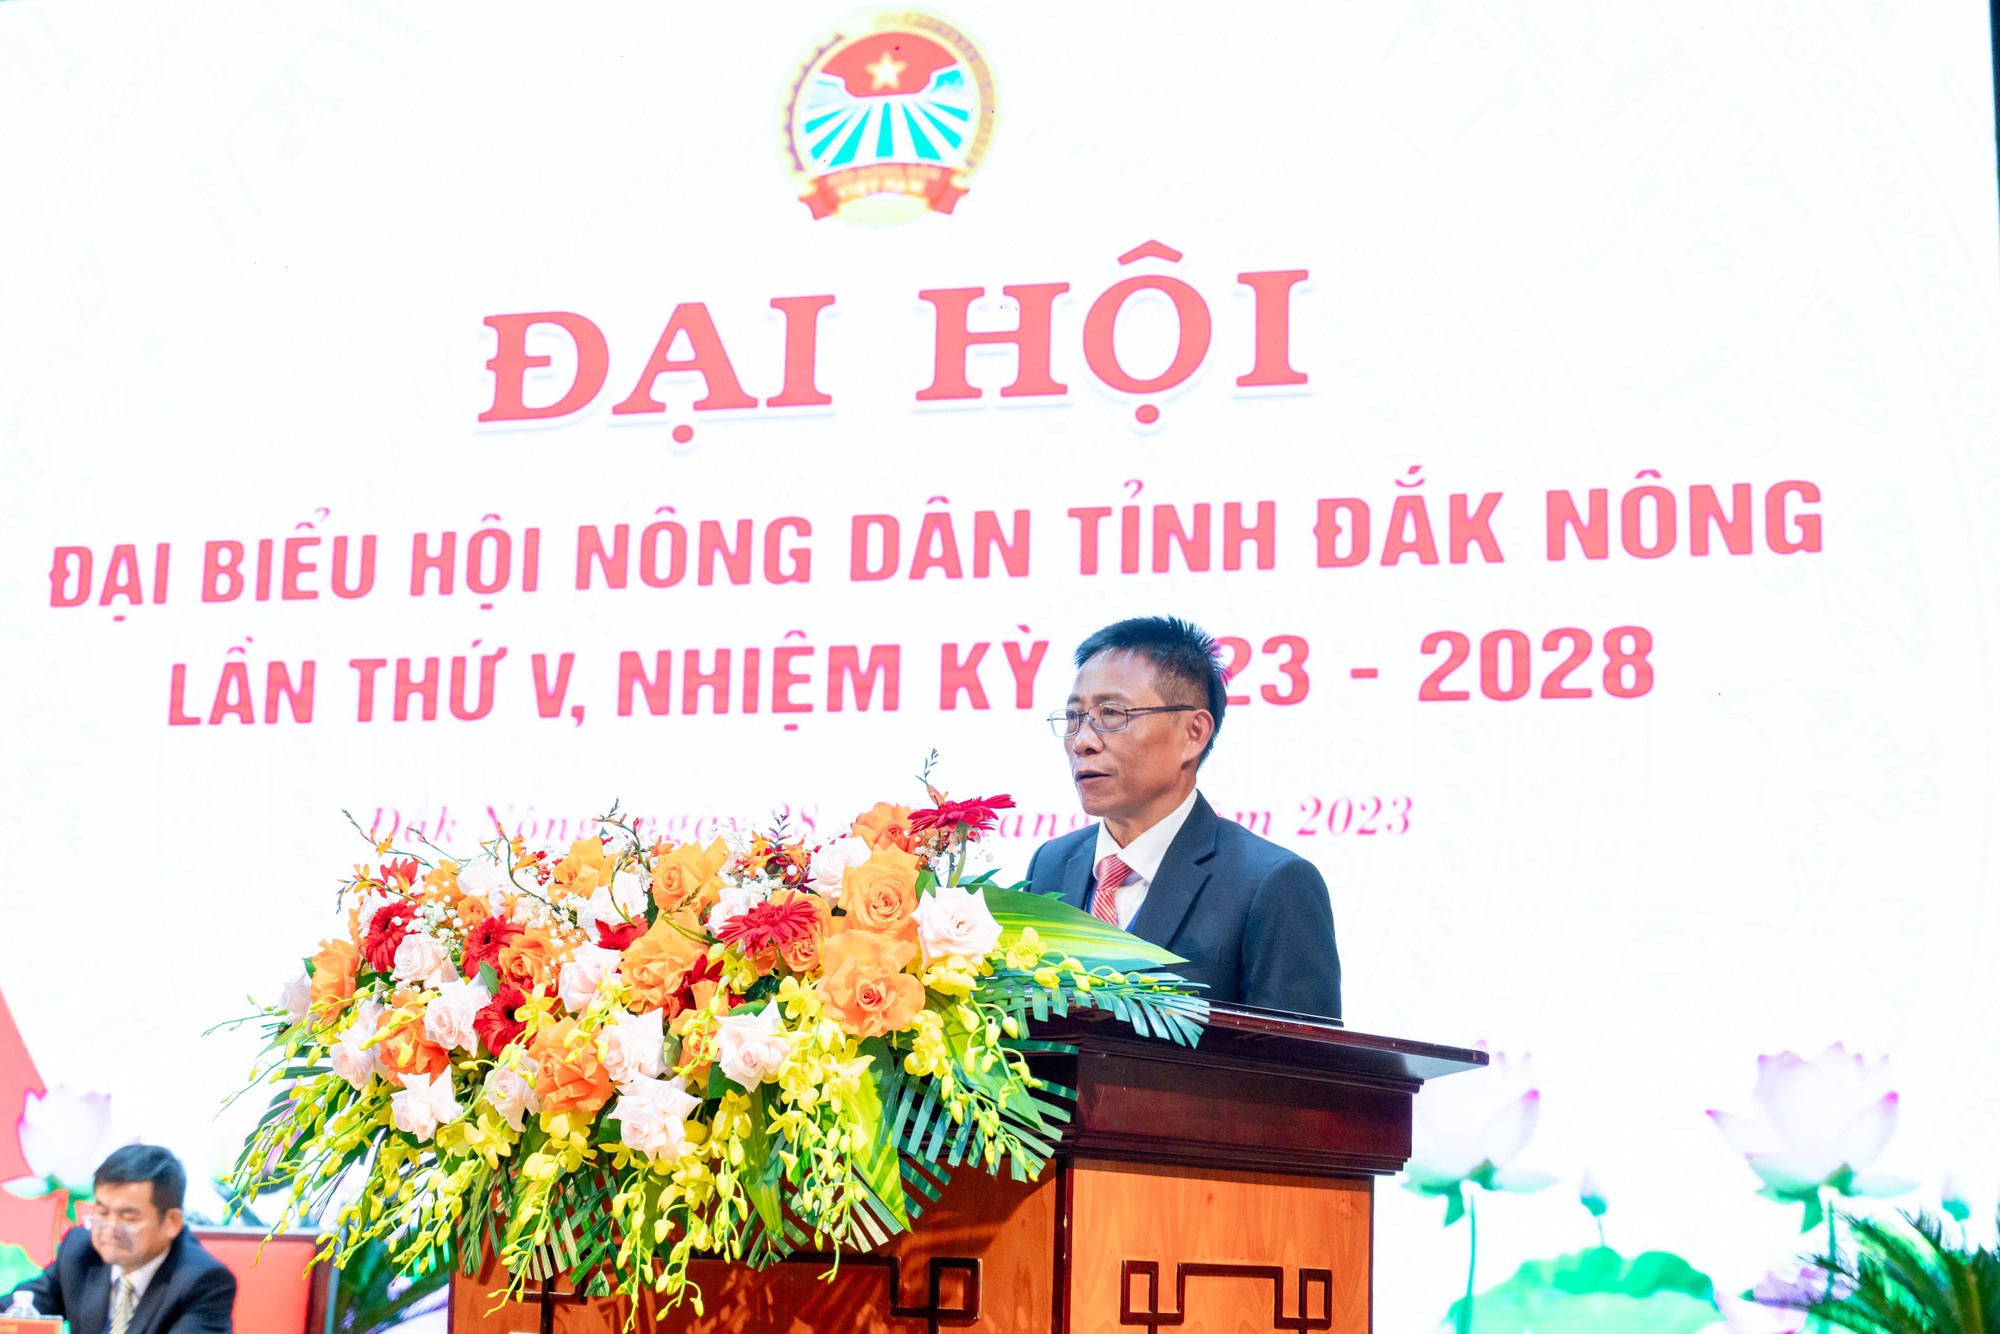 Tiểu sử ông Hồ Gấm - Chủ tịch Hội Nông dân tỉnh Đắk Nông vừa tái đắc cử nhiệm kỳ mới - Ảnh 2.